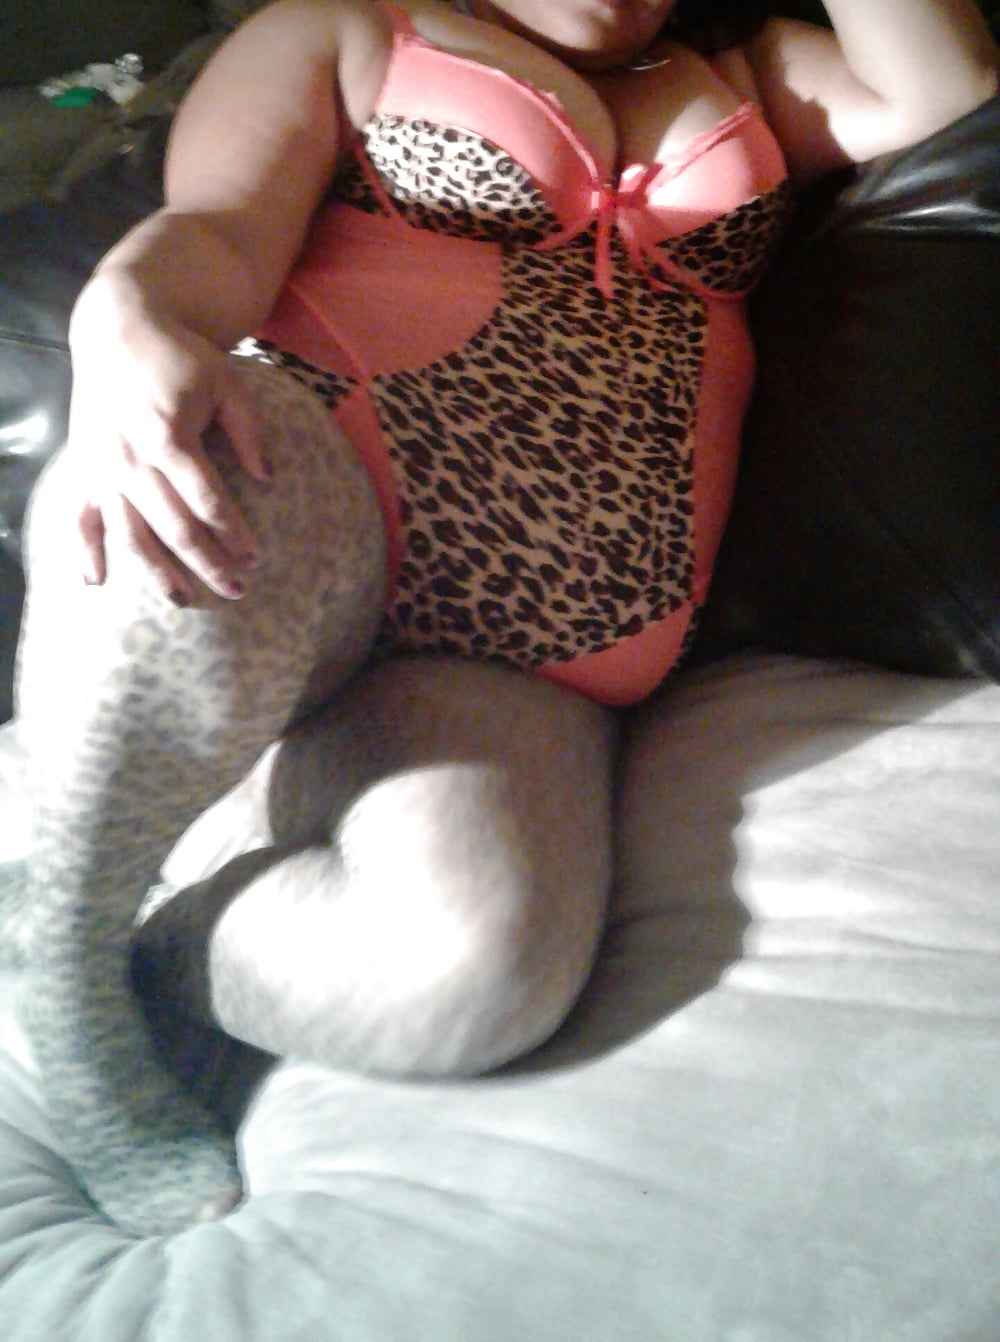 Bbw amateur in leopard lingerie pict gal